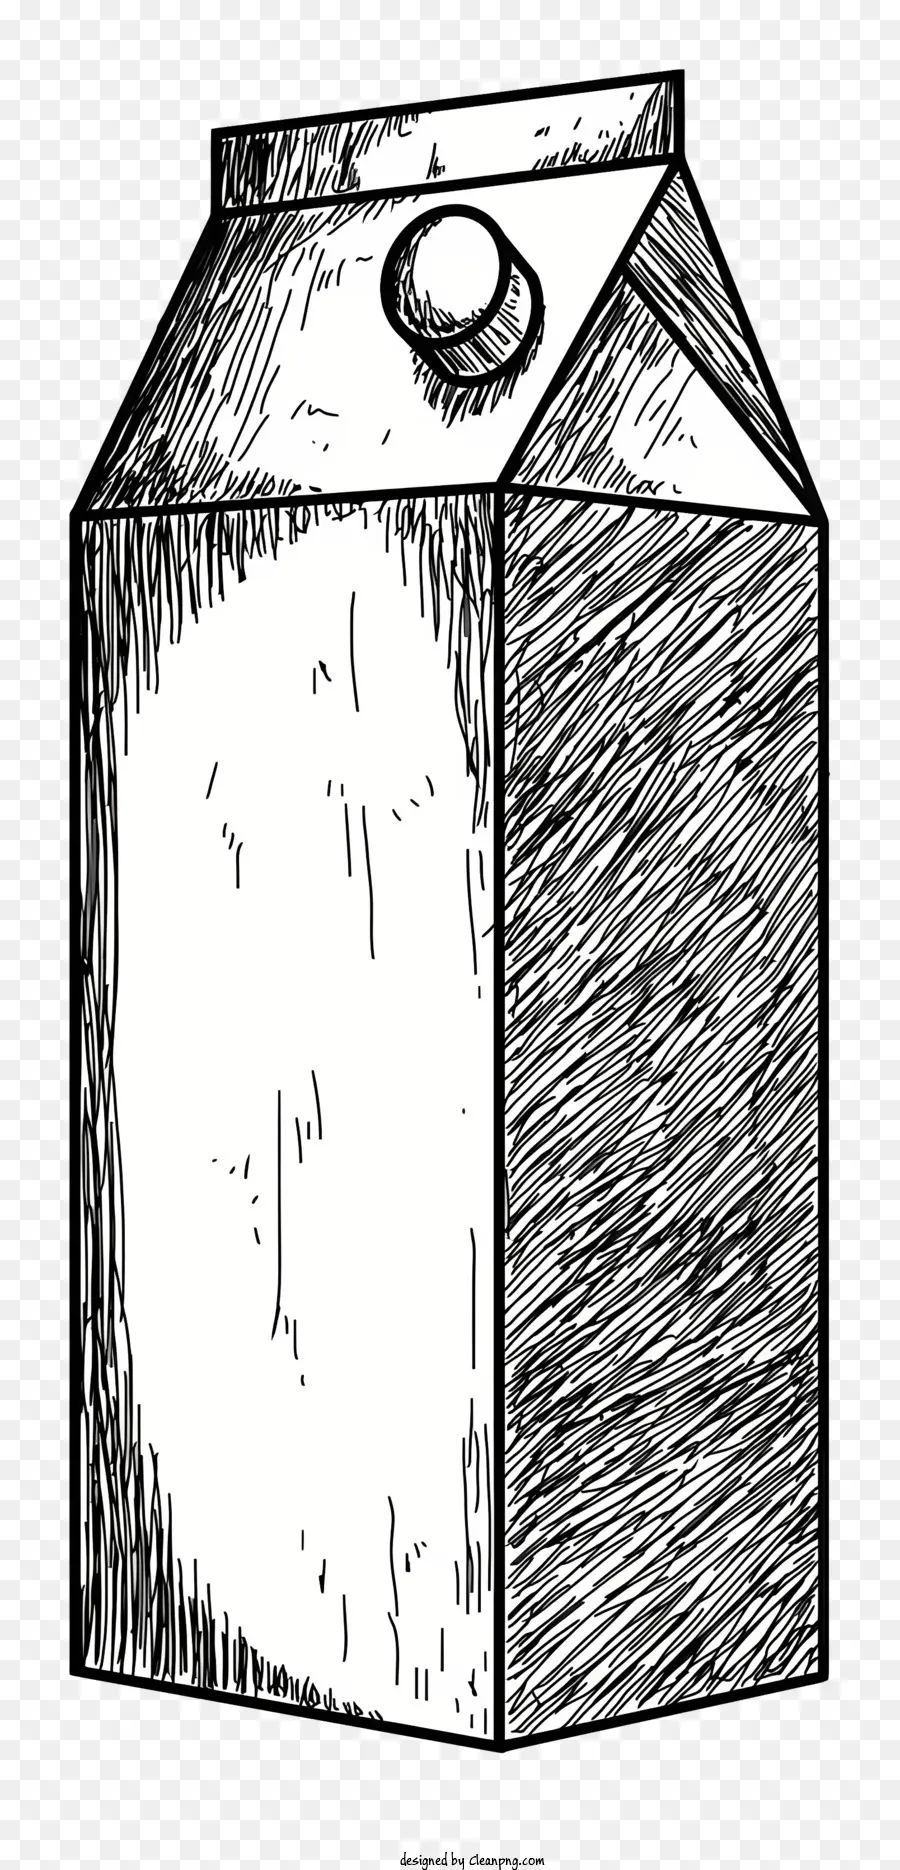 Milk Cartone Illustrazione in bianco e nero in plastica trasparente in plastica Forma liscia superficie liscia - Cartone di latte monocromatico con top in plastica trasparente